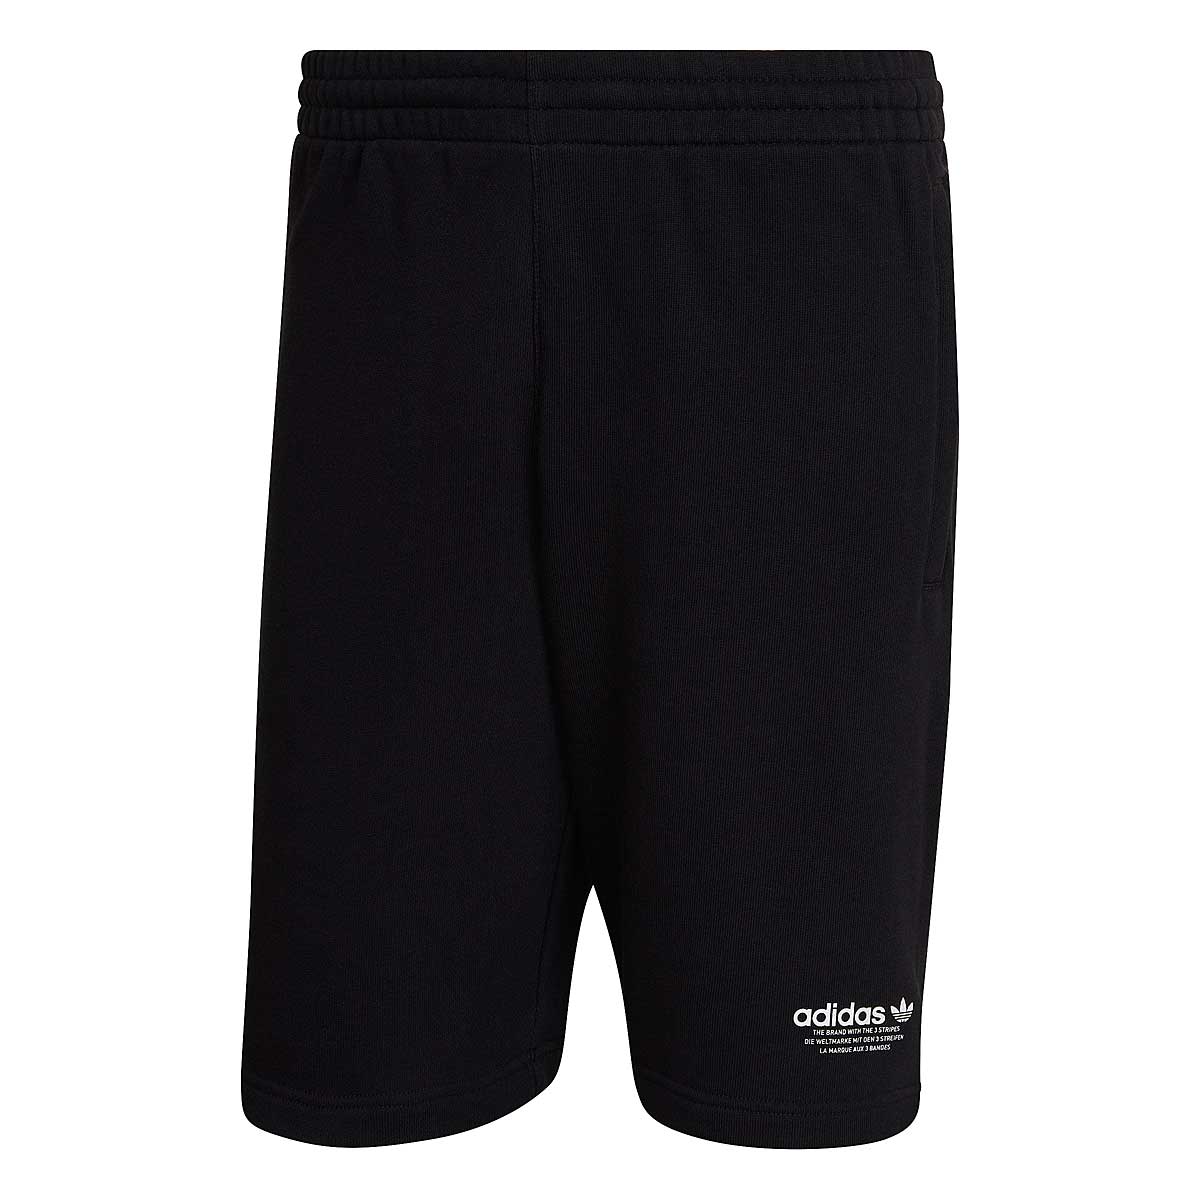 Adidas Originals United Shorts, Black